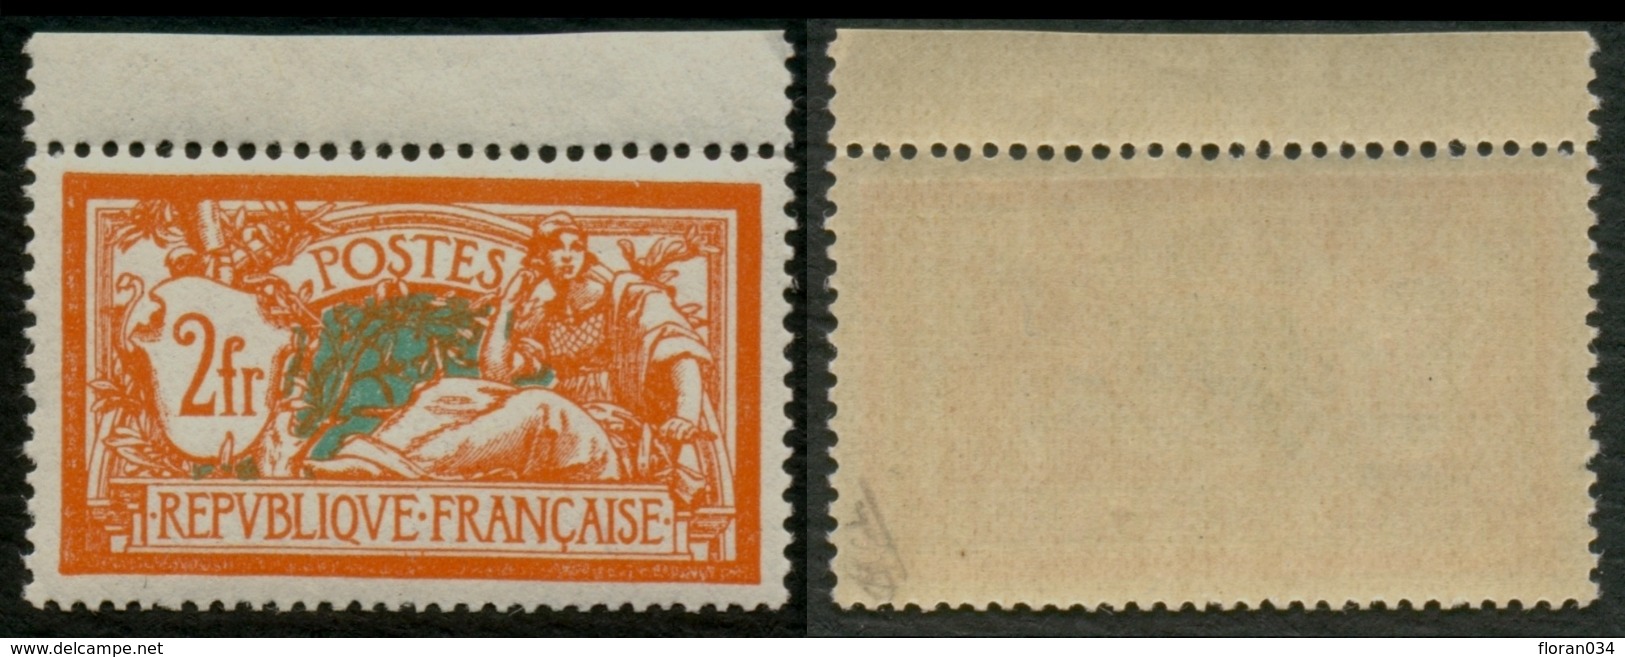 France N° 145 Neuf ** (MNH) Haut De Feuille Centrage PARFAIT - Signé Calves - Cote 262 Euros - SUPERBE - Unused Stamps